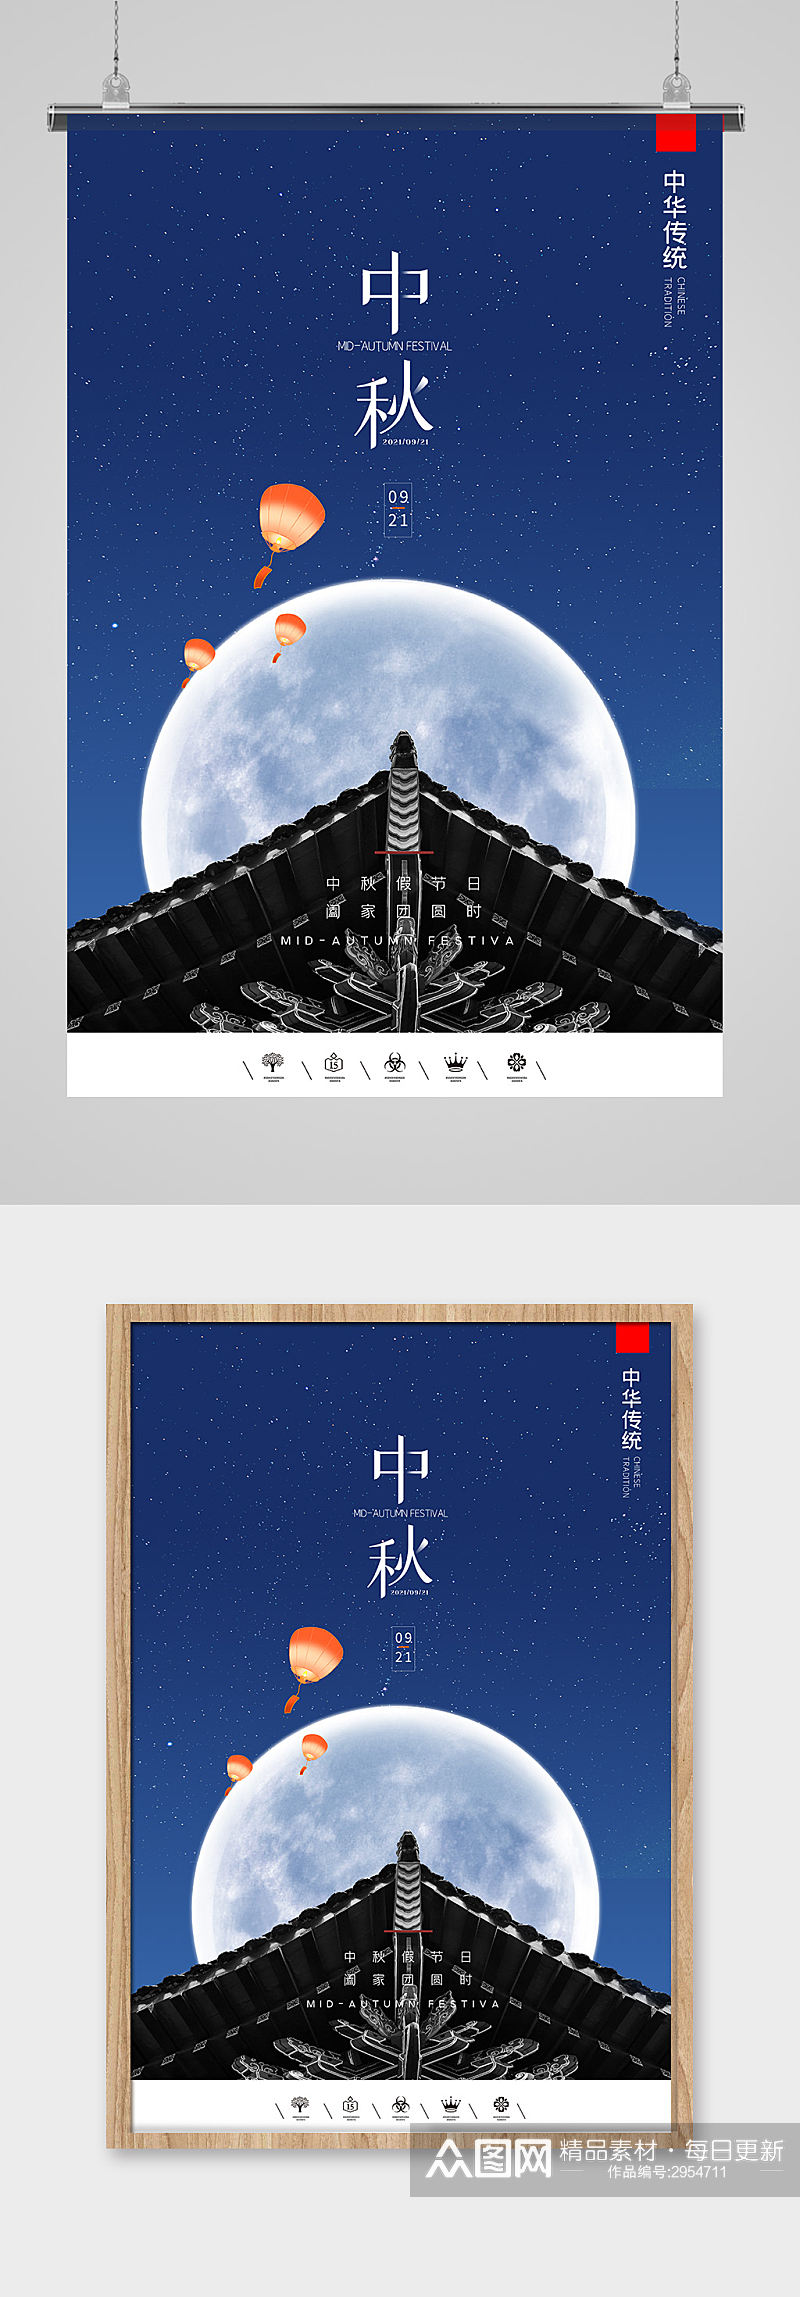 唯美中国风中秋节海报设计素材